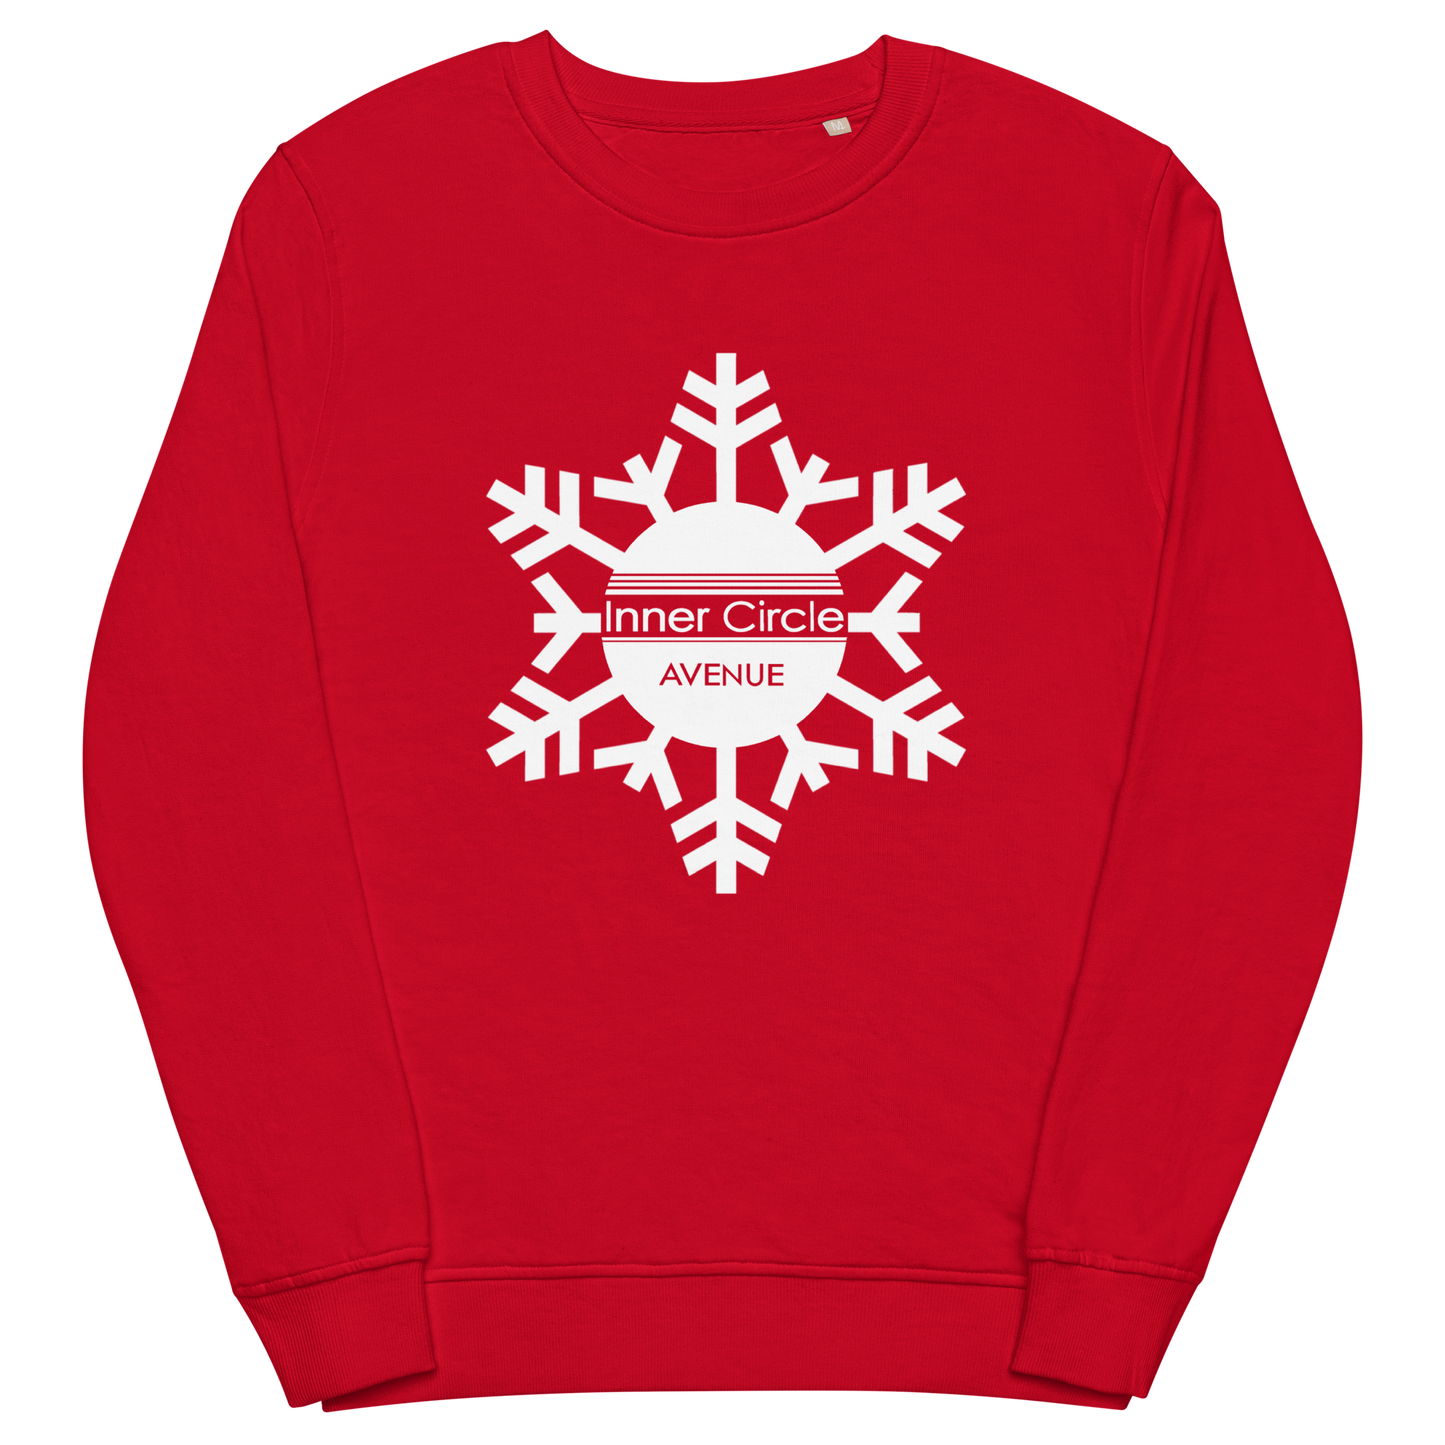 "Icy ICA" Sweatshirt